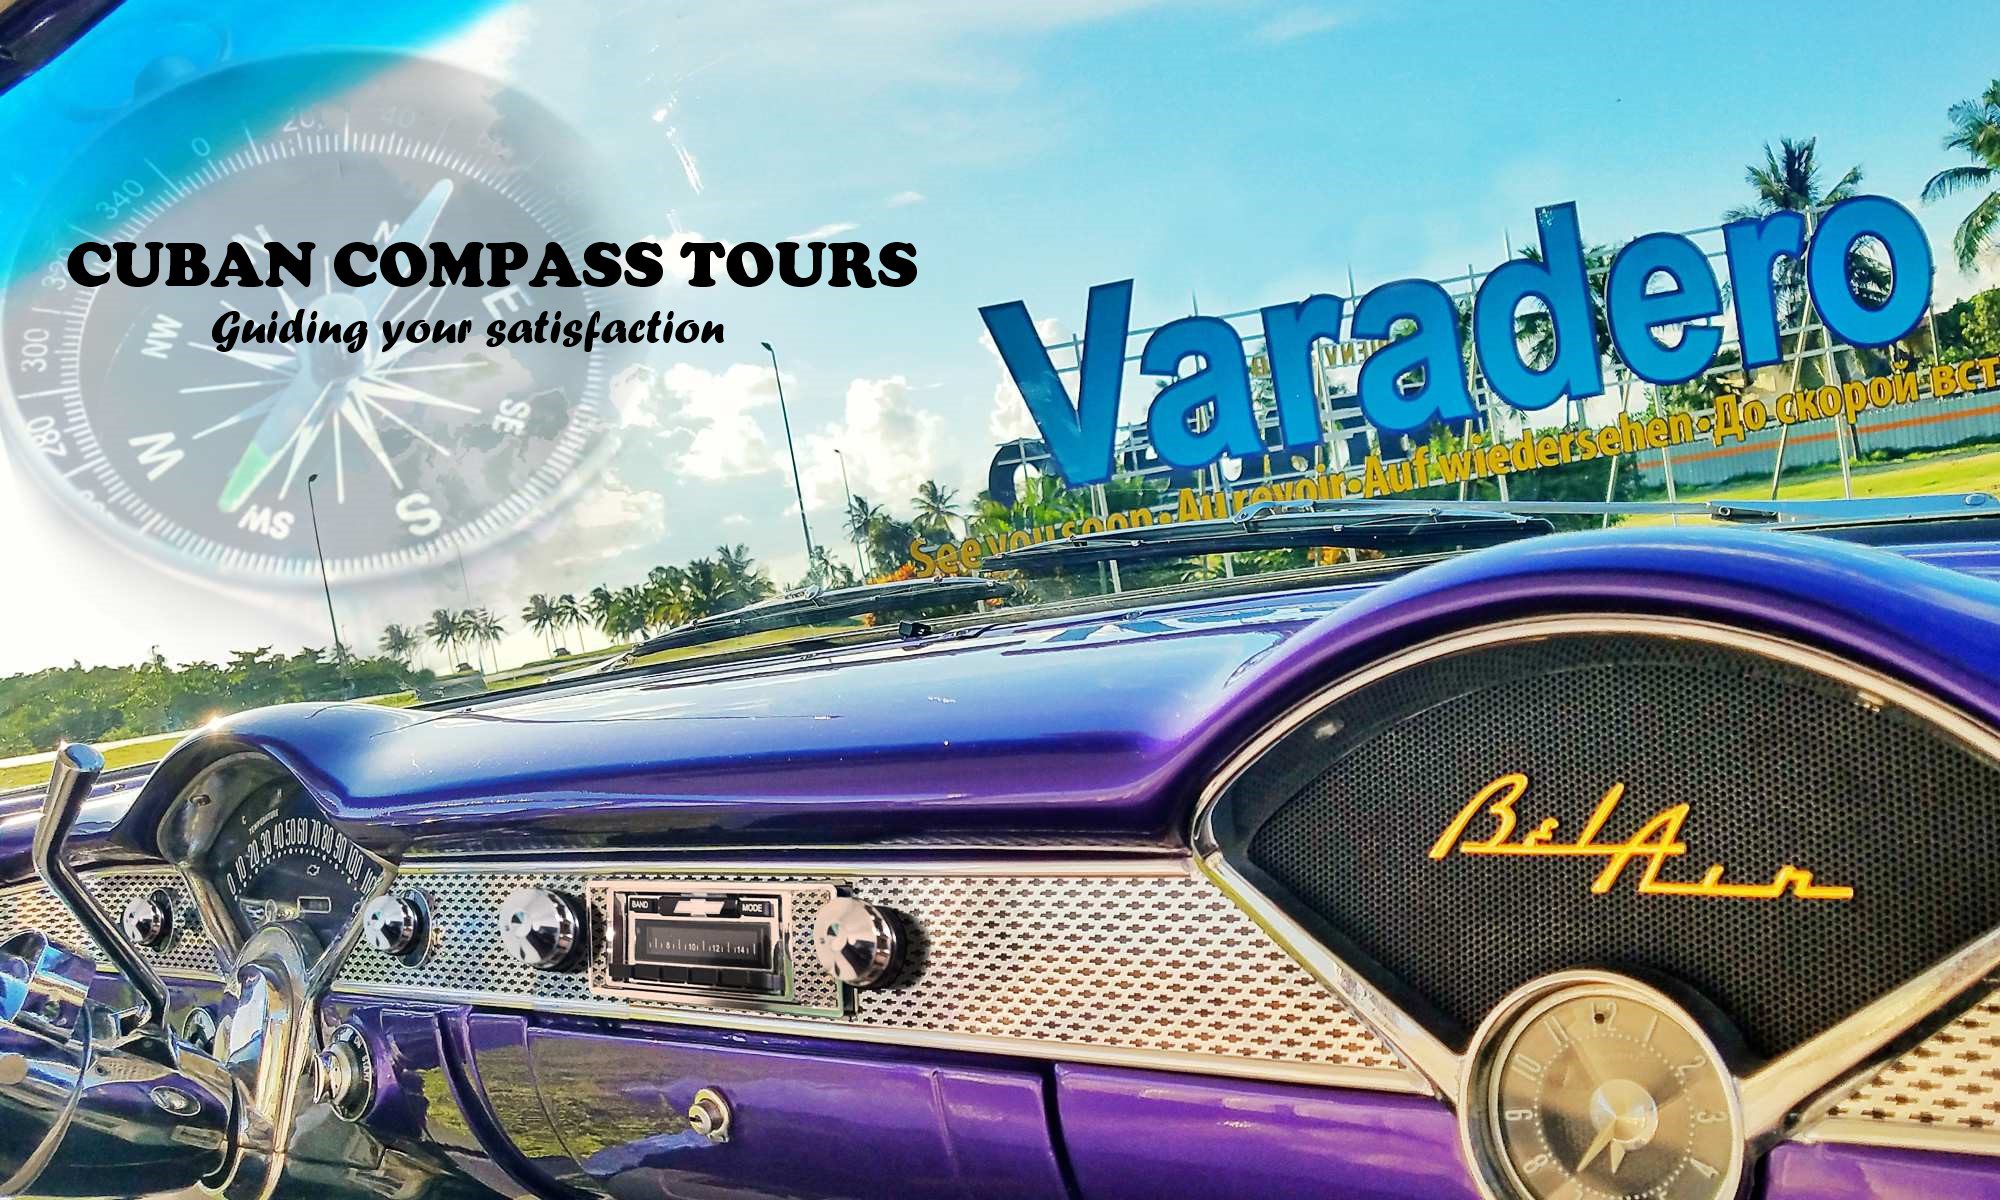 Cuban Compass Tours